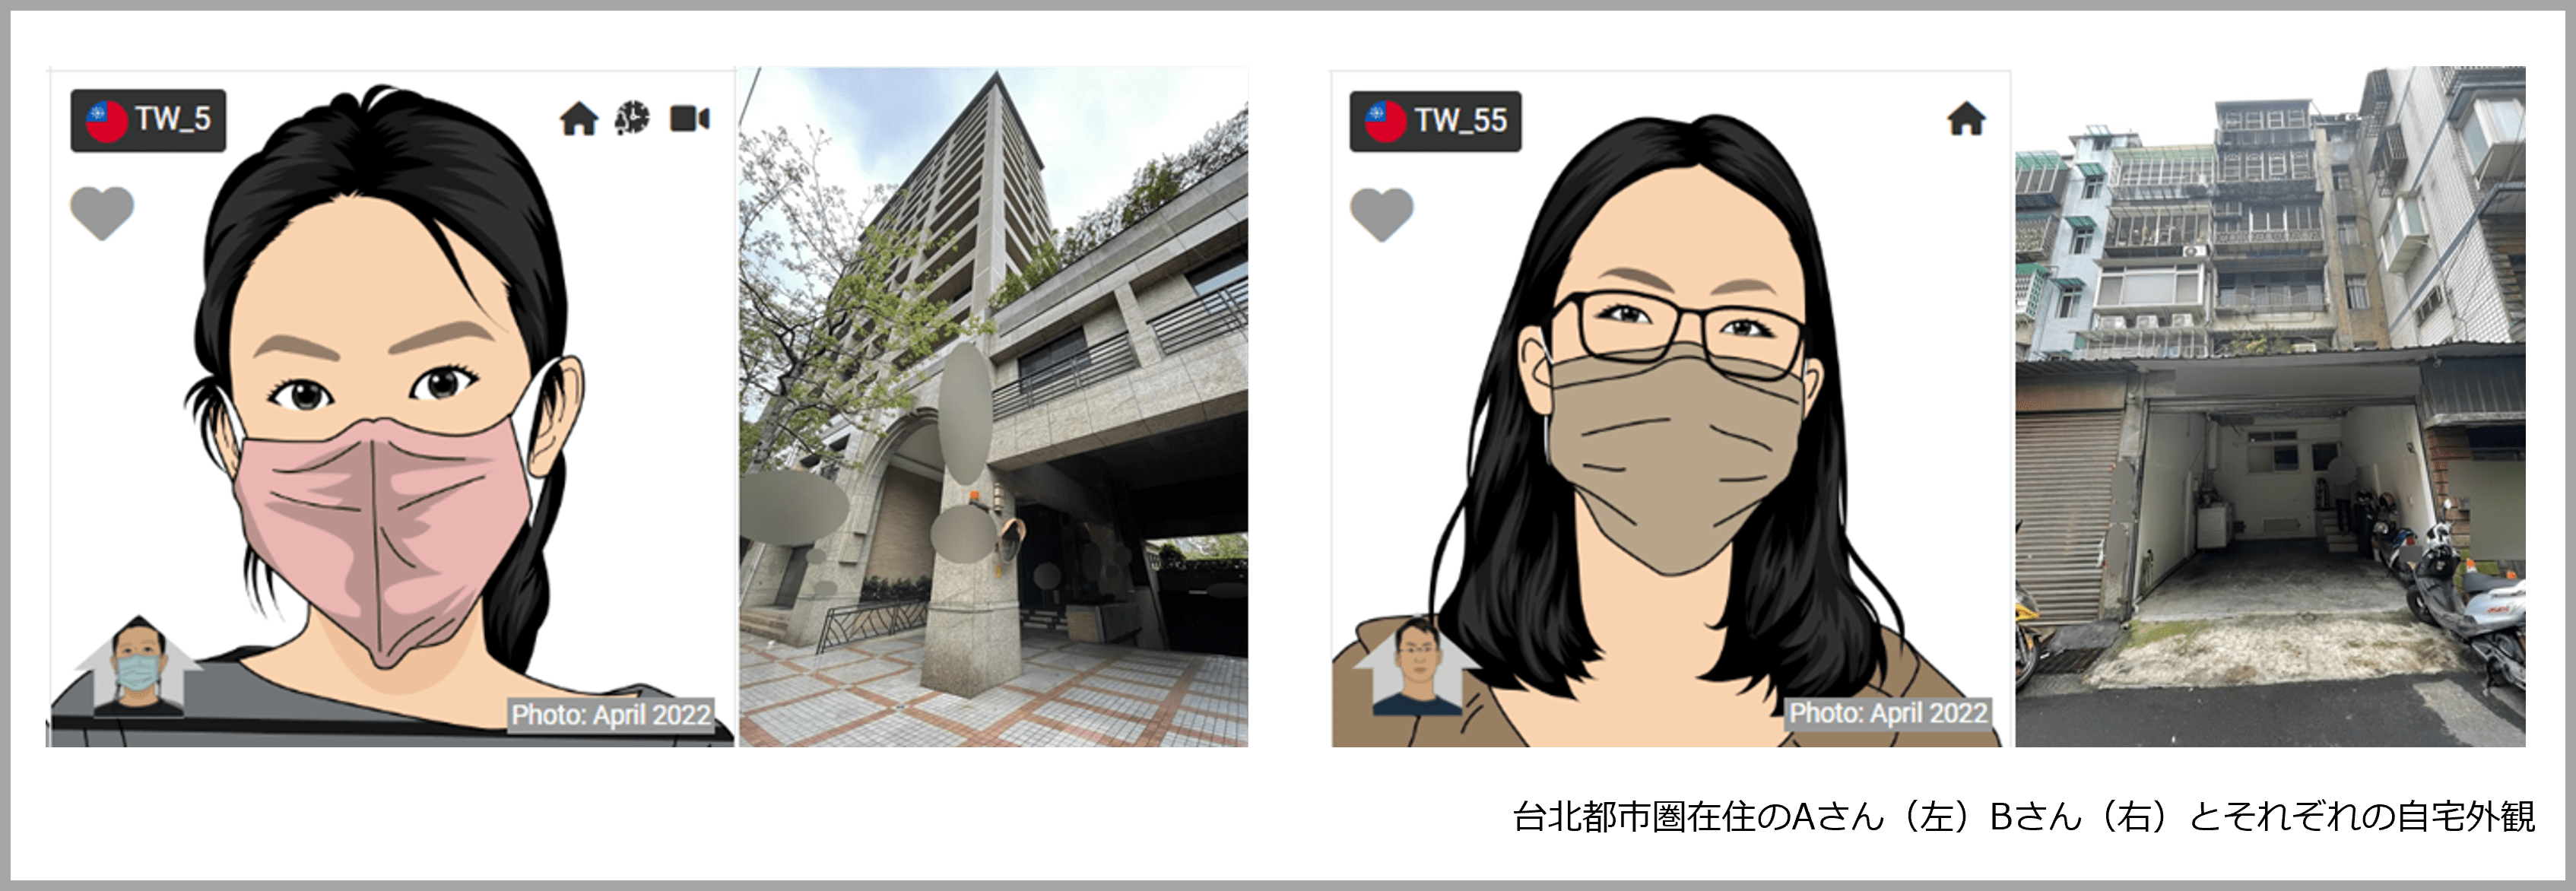 ホームツアーで解説する台湾生活者の健康意識